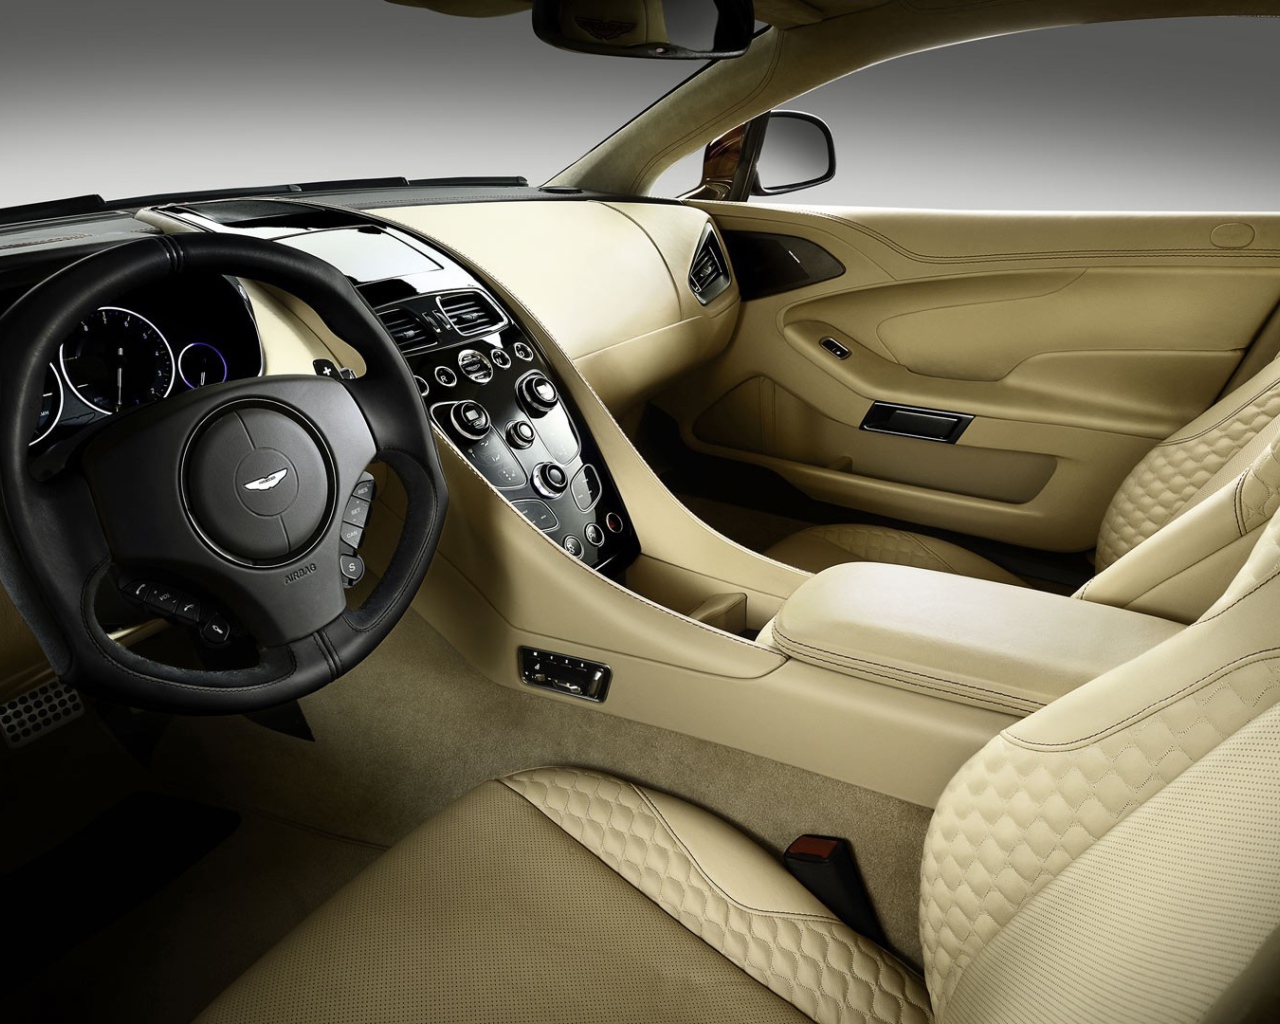 Салон автомобиля Aston Martin Vanquish